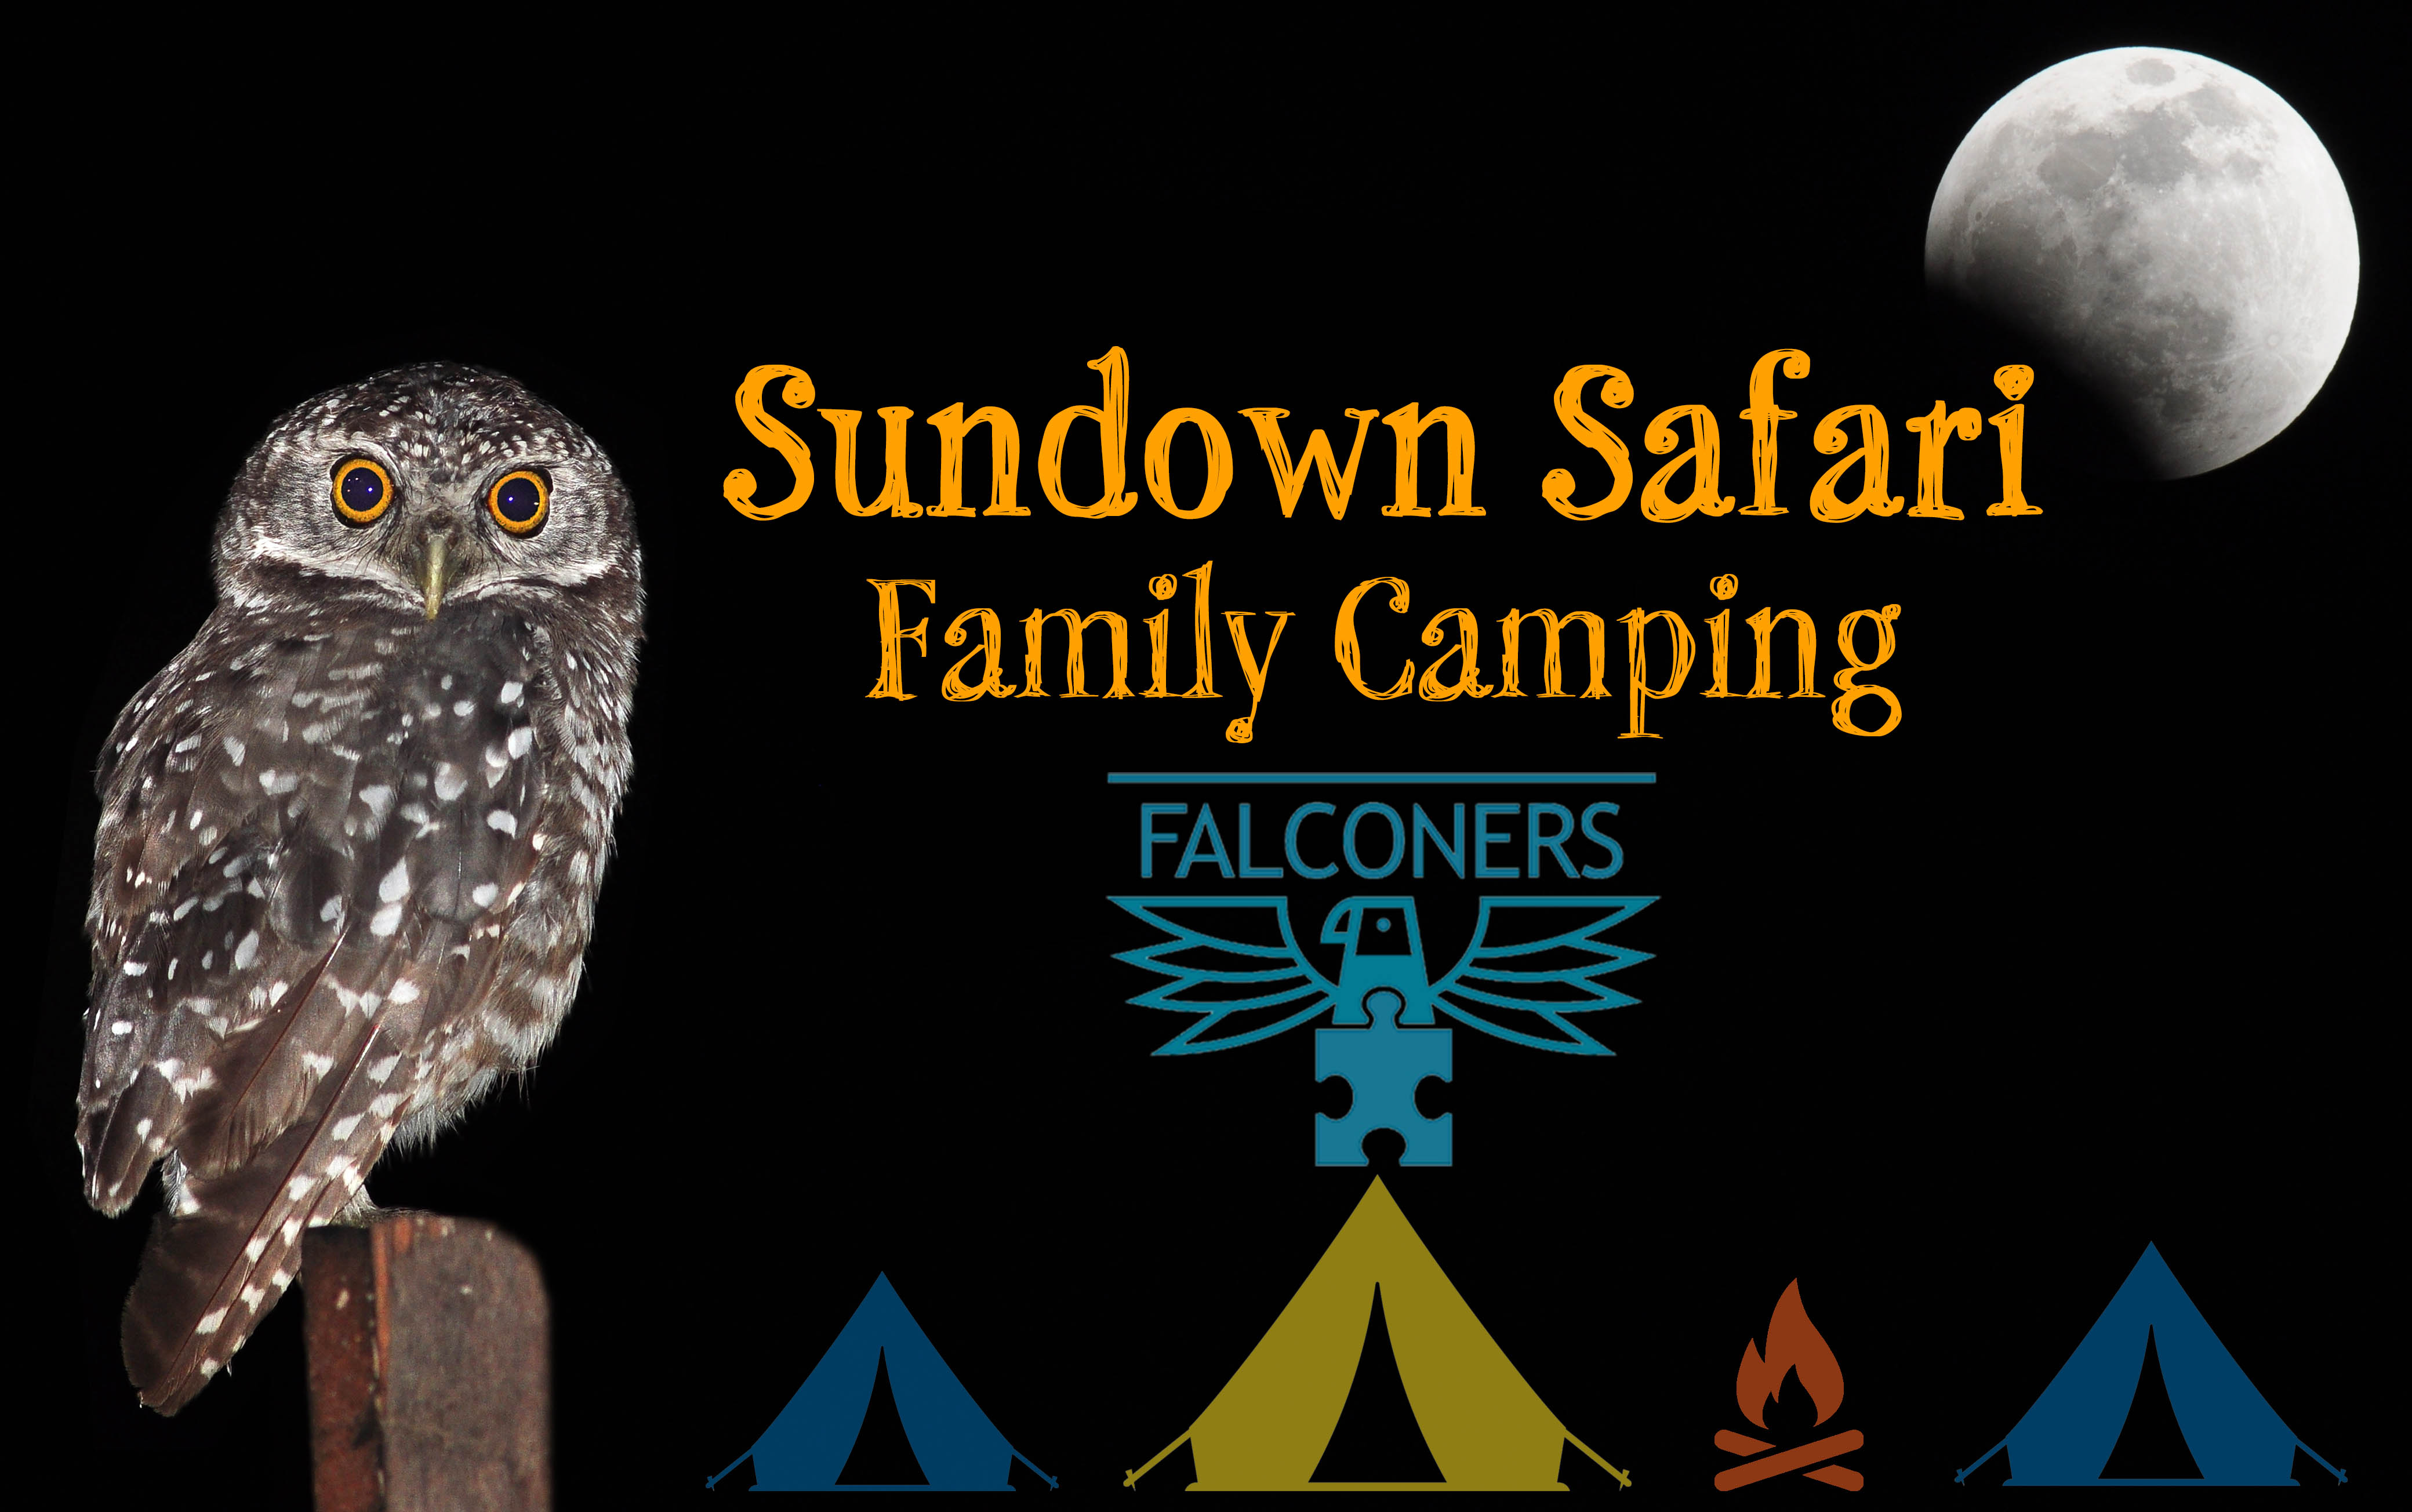 Sundown Safari - Family Camping Falconers